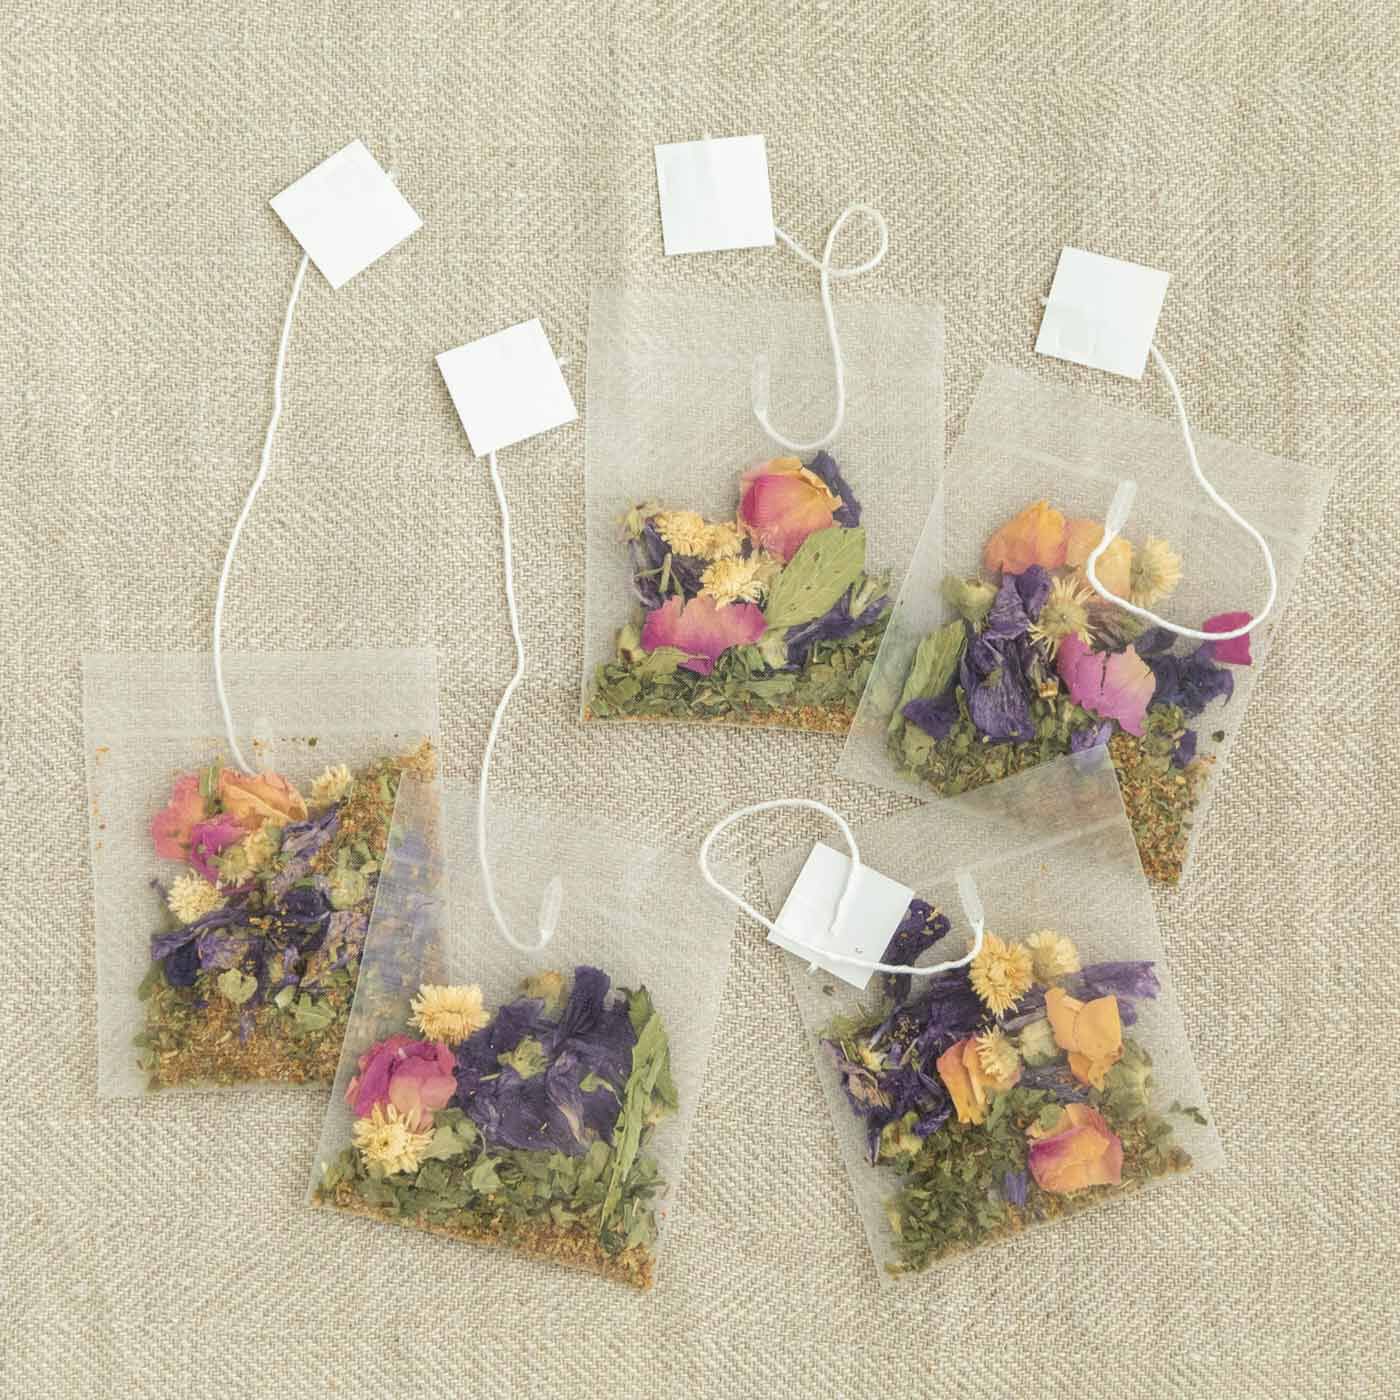 フェリシモの雑貨Kraso|心がざらざらする日のためのハーブティー nono〈きもちも咲くお花〉の会|ティーバッグ5袋セットです。